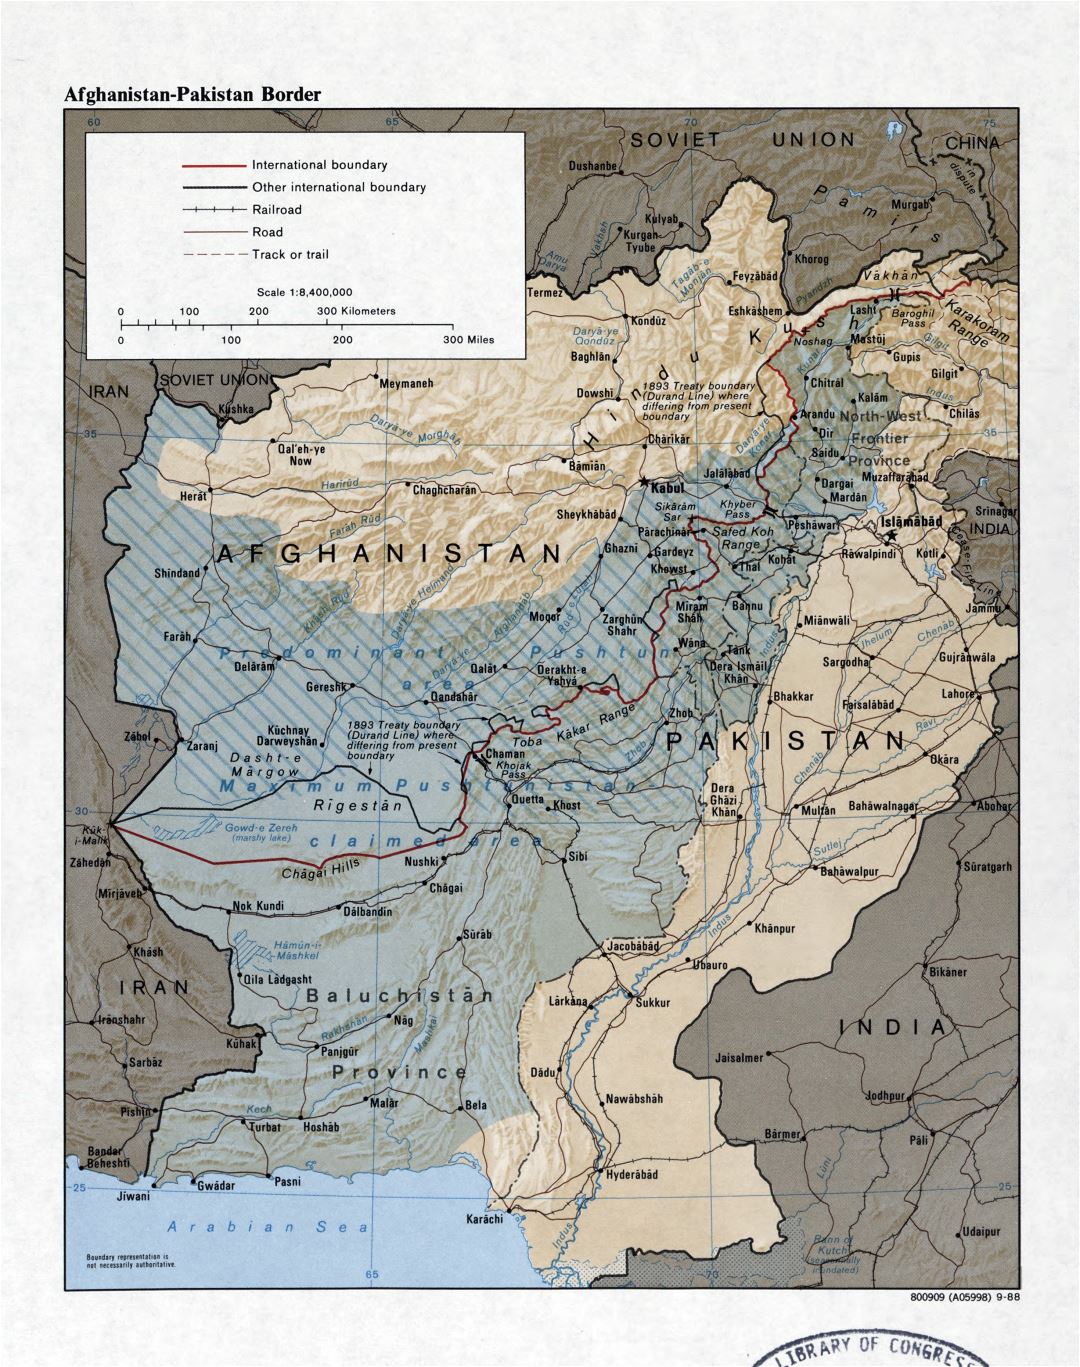 Grande detallado mapa de la frontera entre Afganistán y Pakistán con relieve, carreteras, ferrocarriles y ciudades - 1988